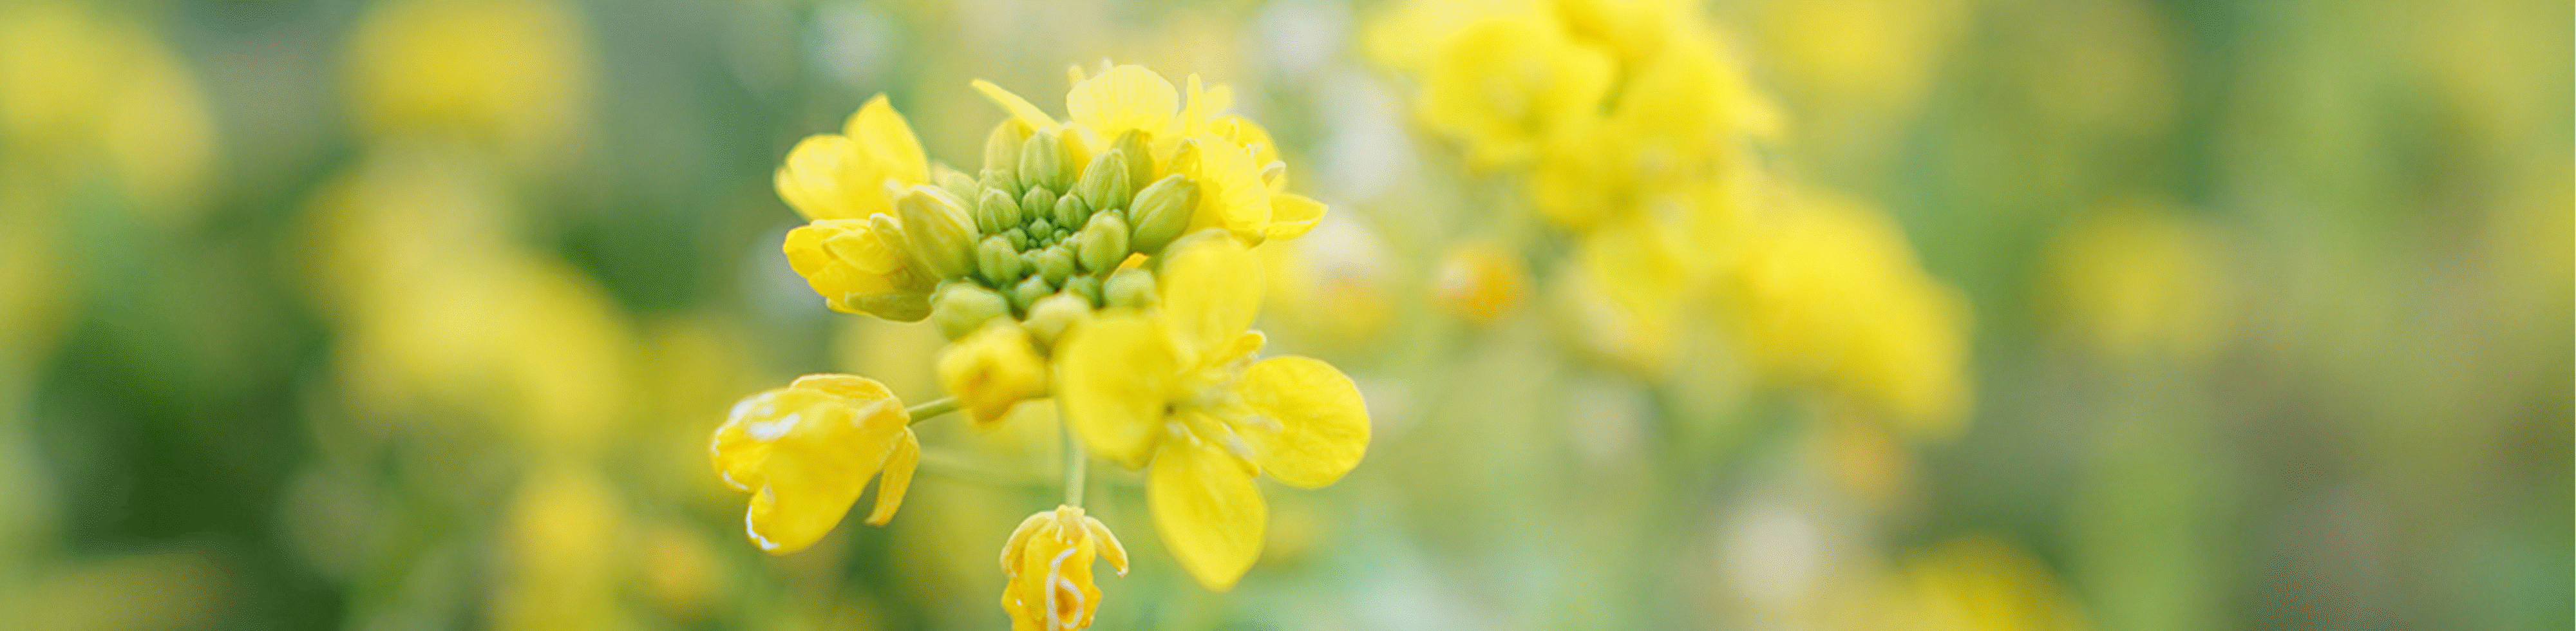 Εικόνα κίτρινων λουλουδιών